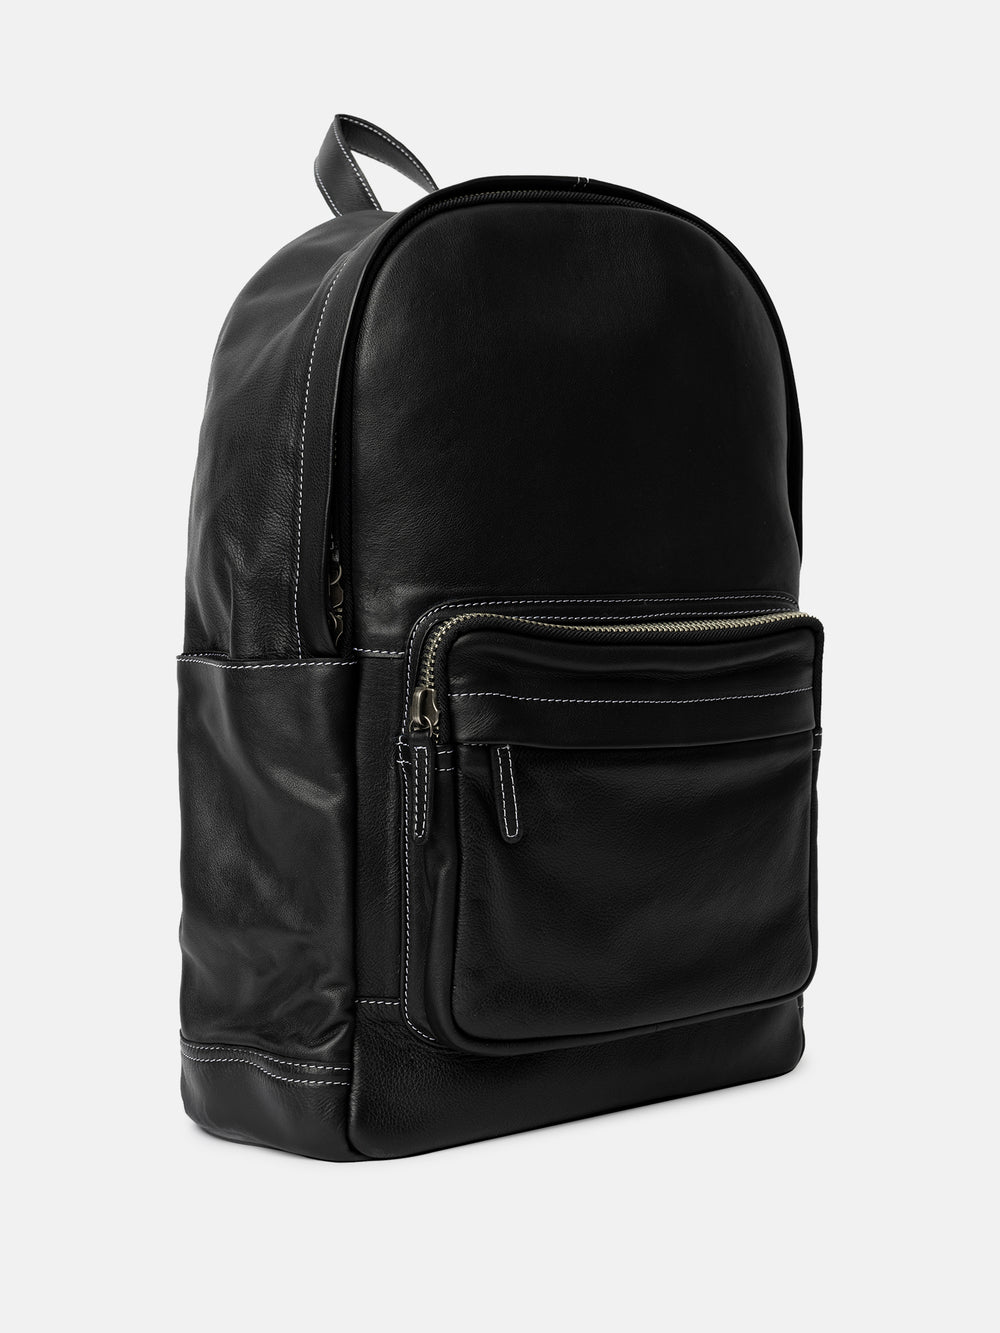 RE:DESIGNED EST 2003 Flanagan Backpack Black